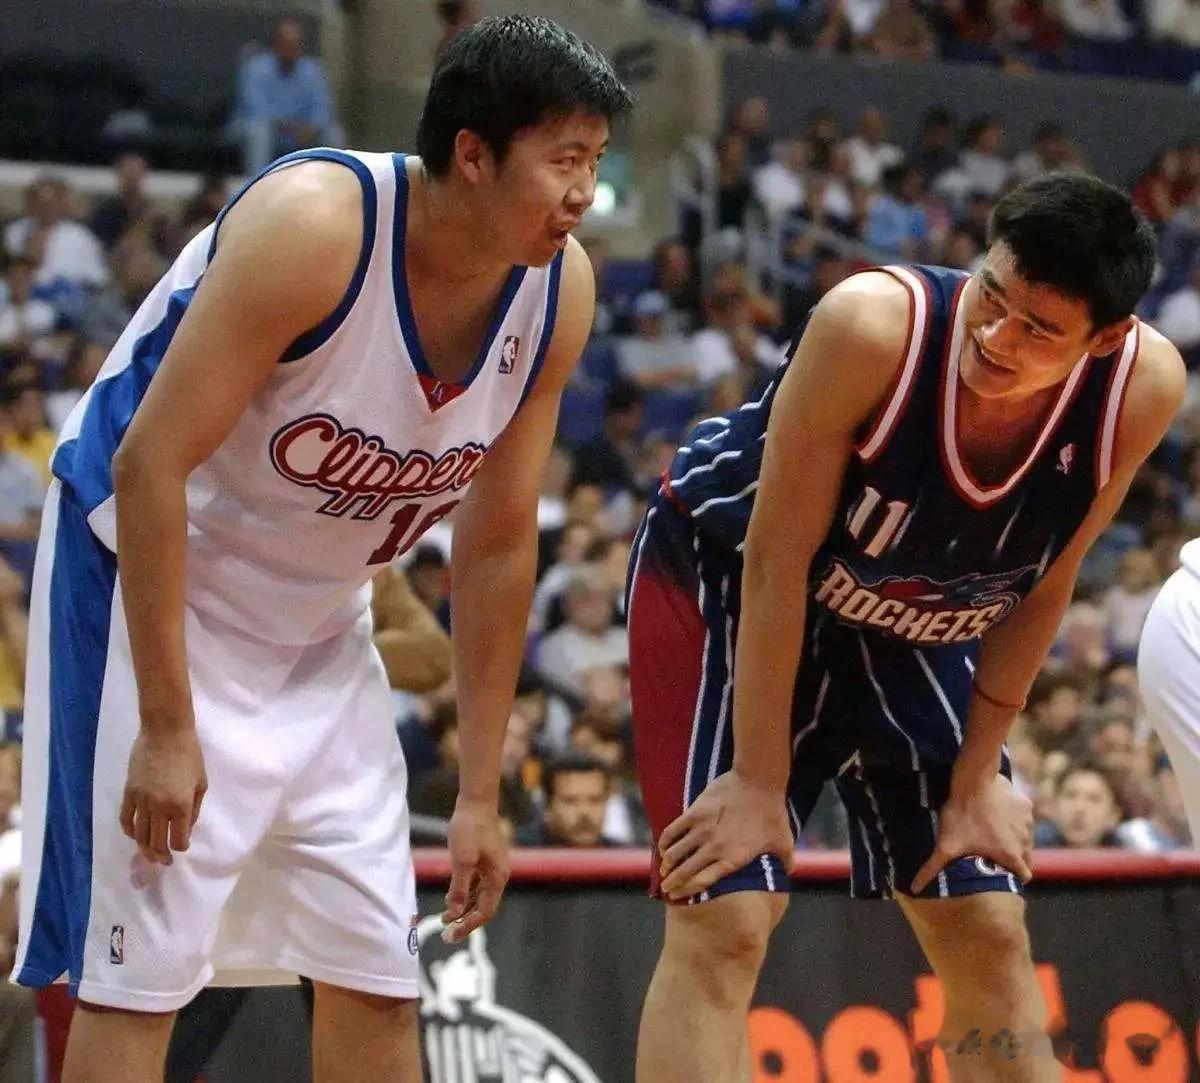 中国球员NBA总薪资排名:
1.姚明:9339万       生涯总得分:924(2)